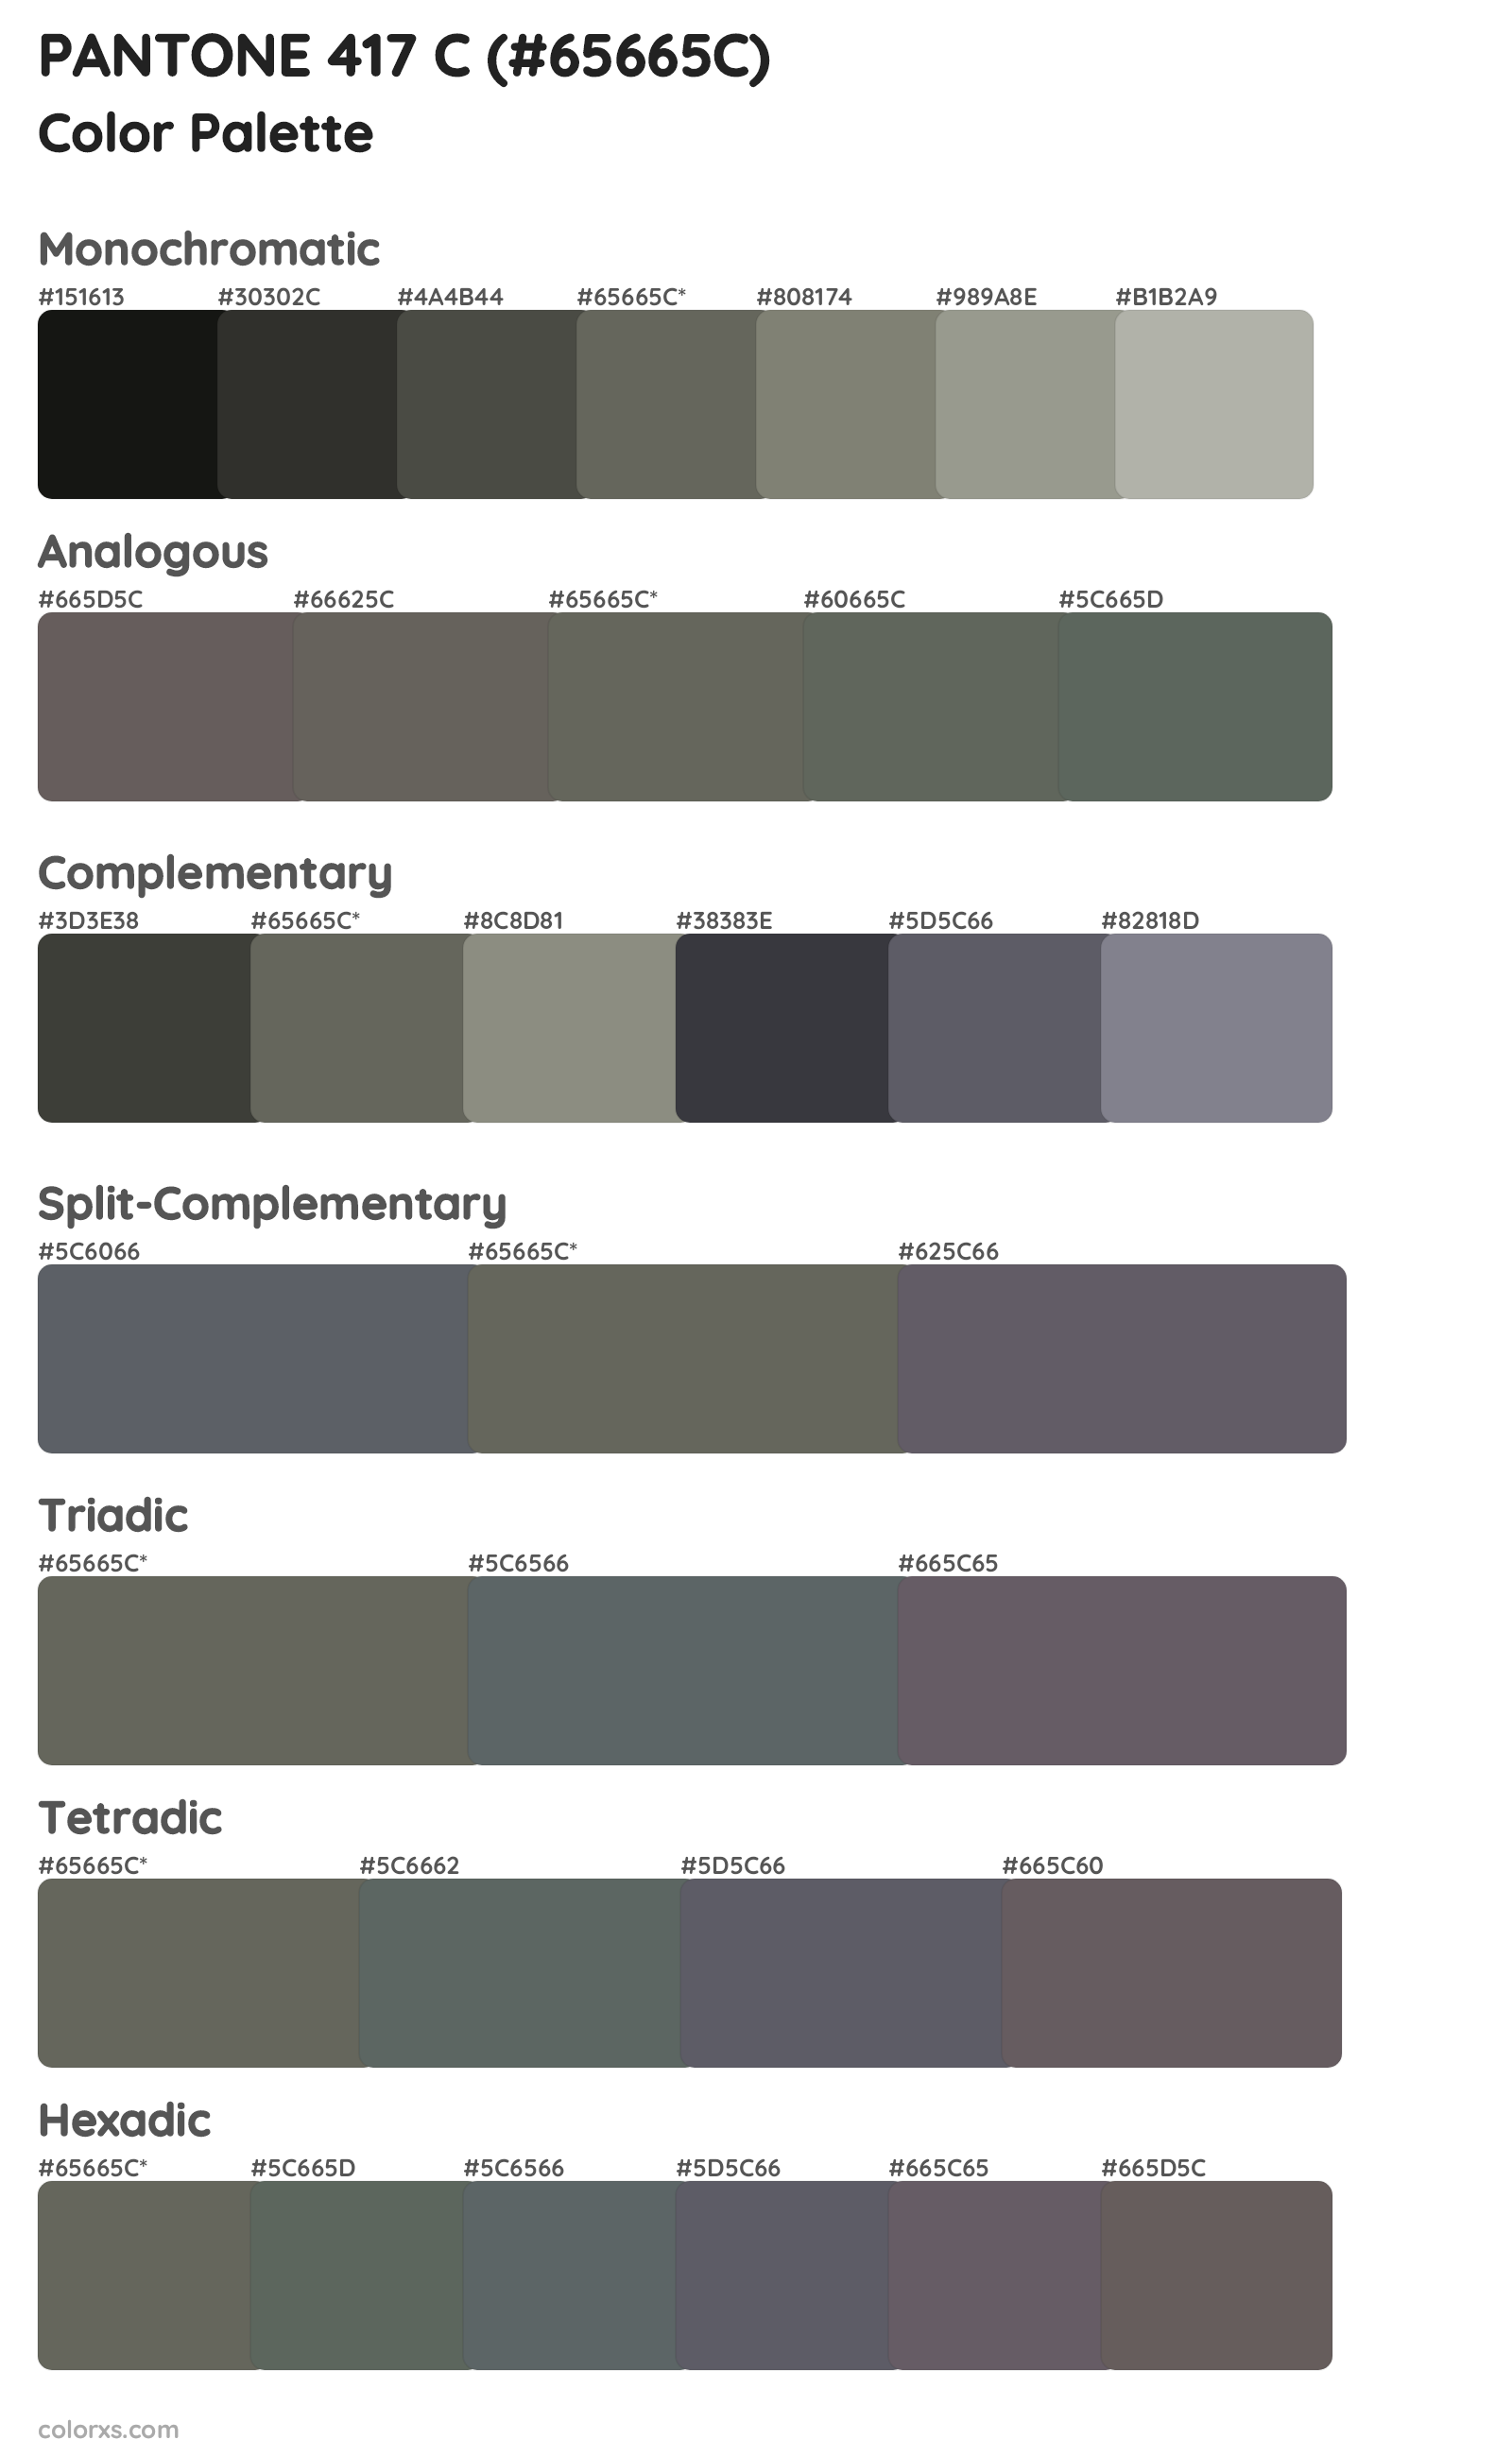 PANTONE 417 C Color Scheme Palettes